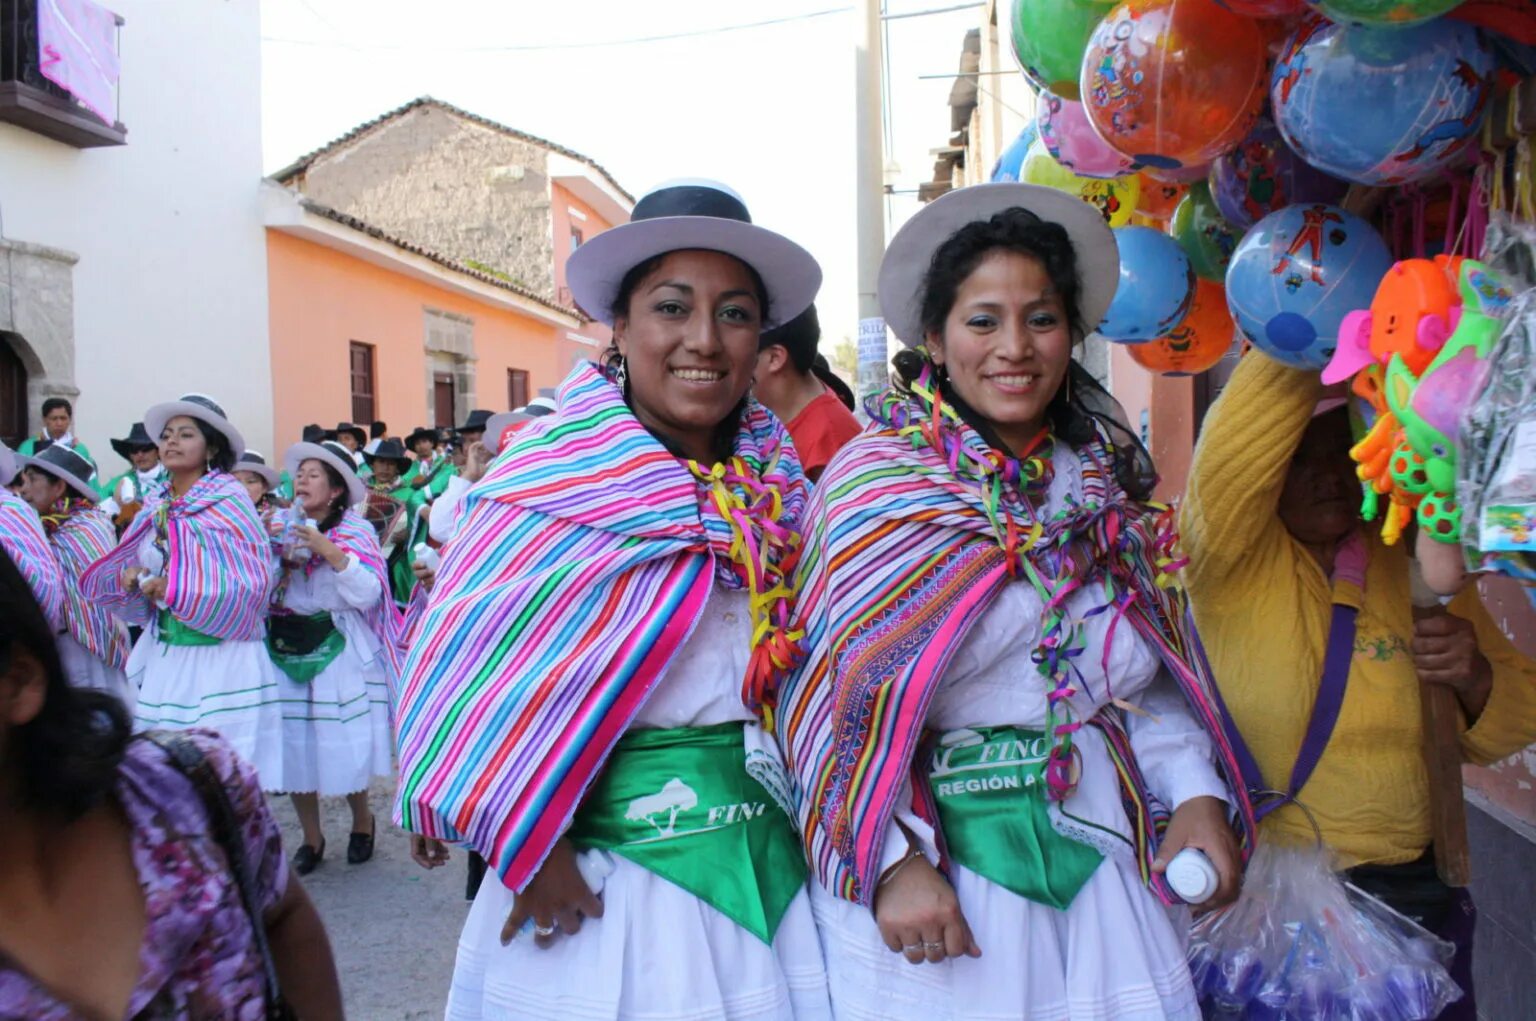 Быт и традиции южной америки. Фестиваль Сеньор-де-Лурен в Перу. Андо-амазонский новый год в Боливии. Парагвай люди. Население Перу перуанцы.